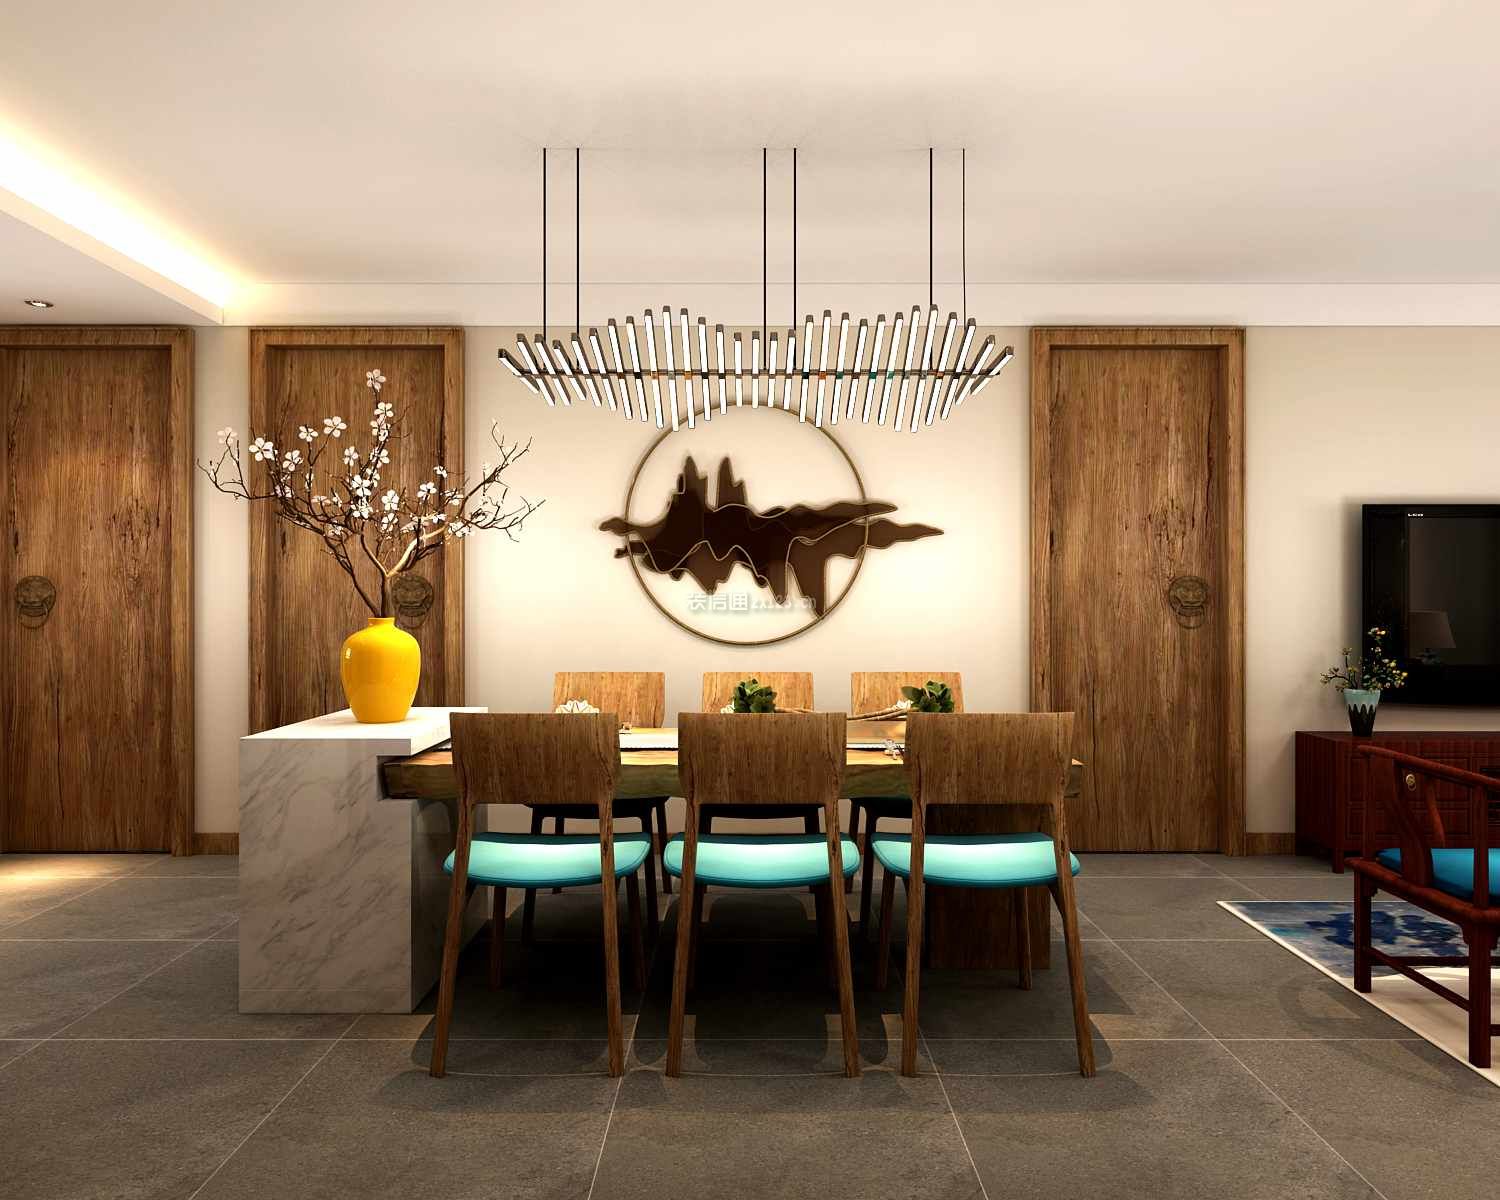 中式风格家庭餐厅灯具创意设计效果图